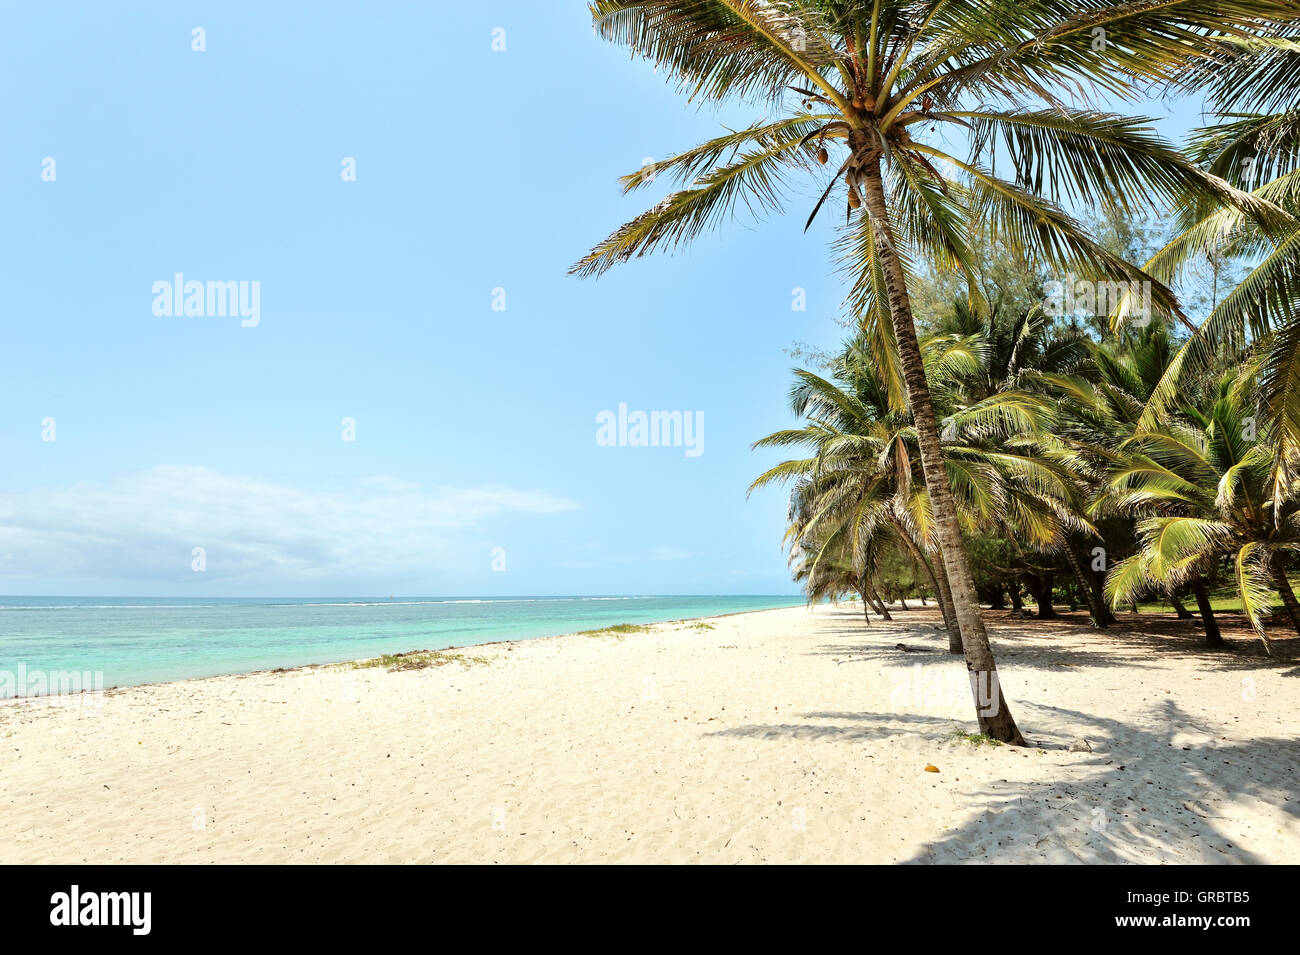 Kokosnuss-Palmen und wunderschöne blaue Meer entspannen und träumen Stockfoto